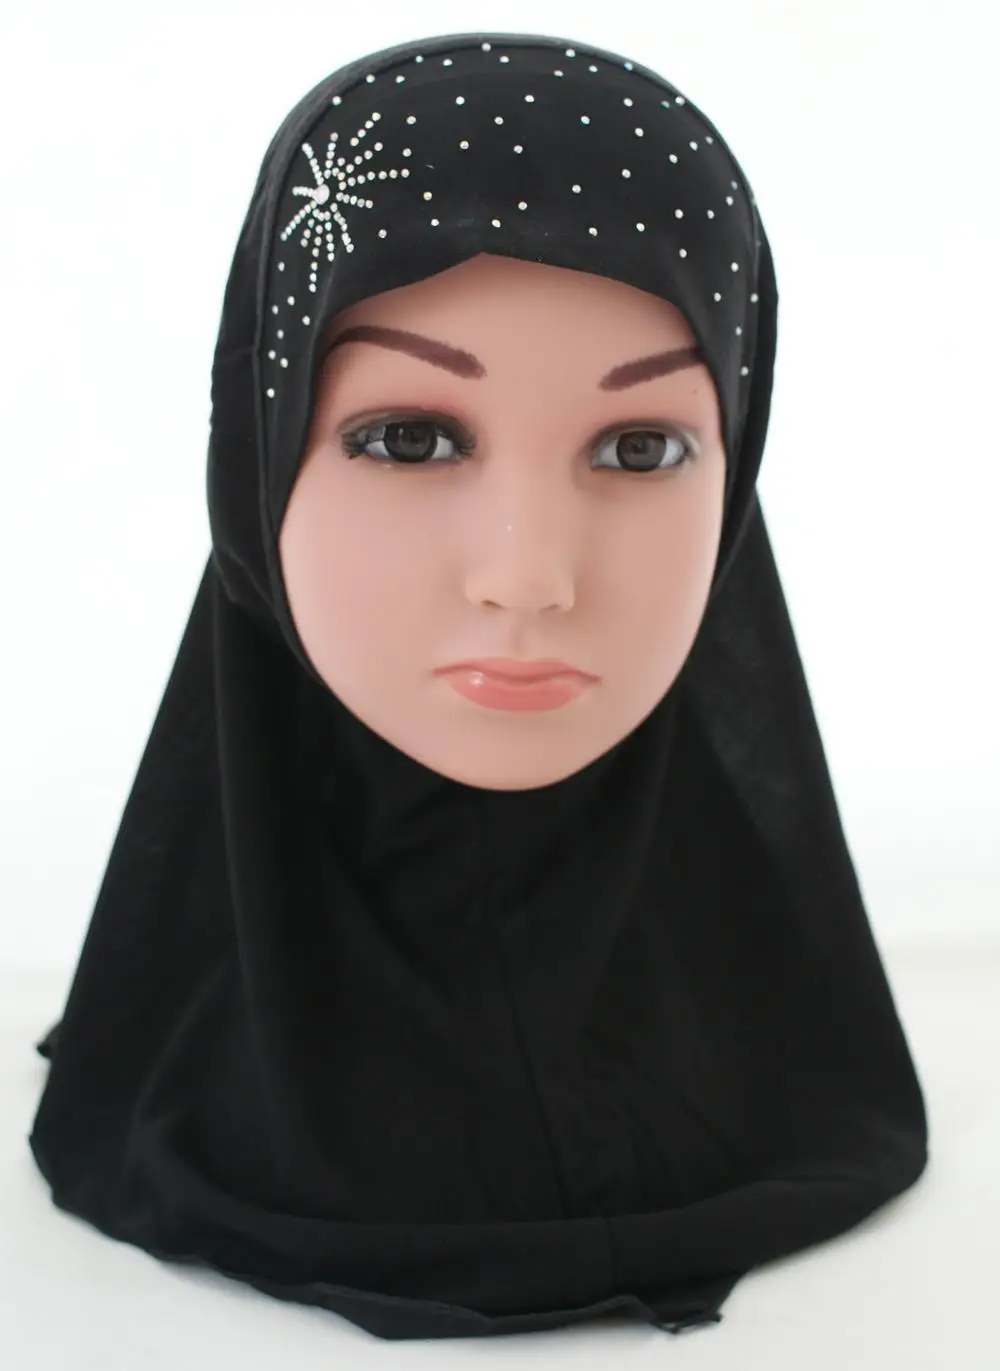 Дети девочки исламский мусульманский шарф в арабском стиле школы Стразы головные уборы для детей Ближний Восток тюрбан Рамадан шапочки капот выпадение волос Мода - Цвет: black